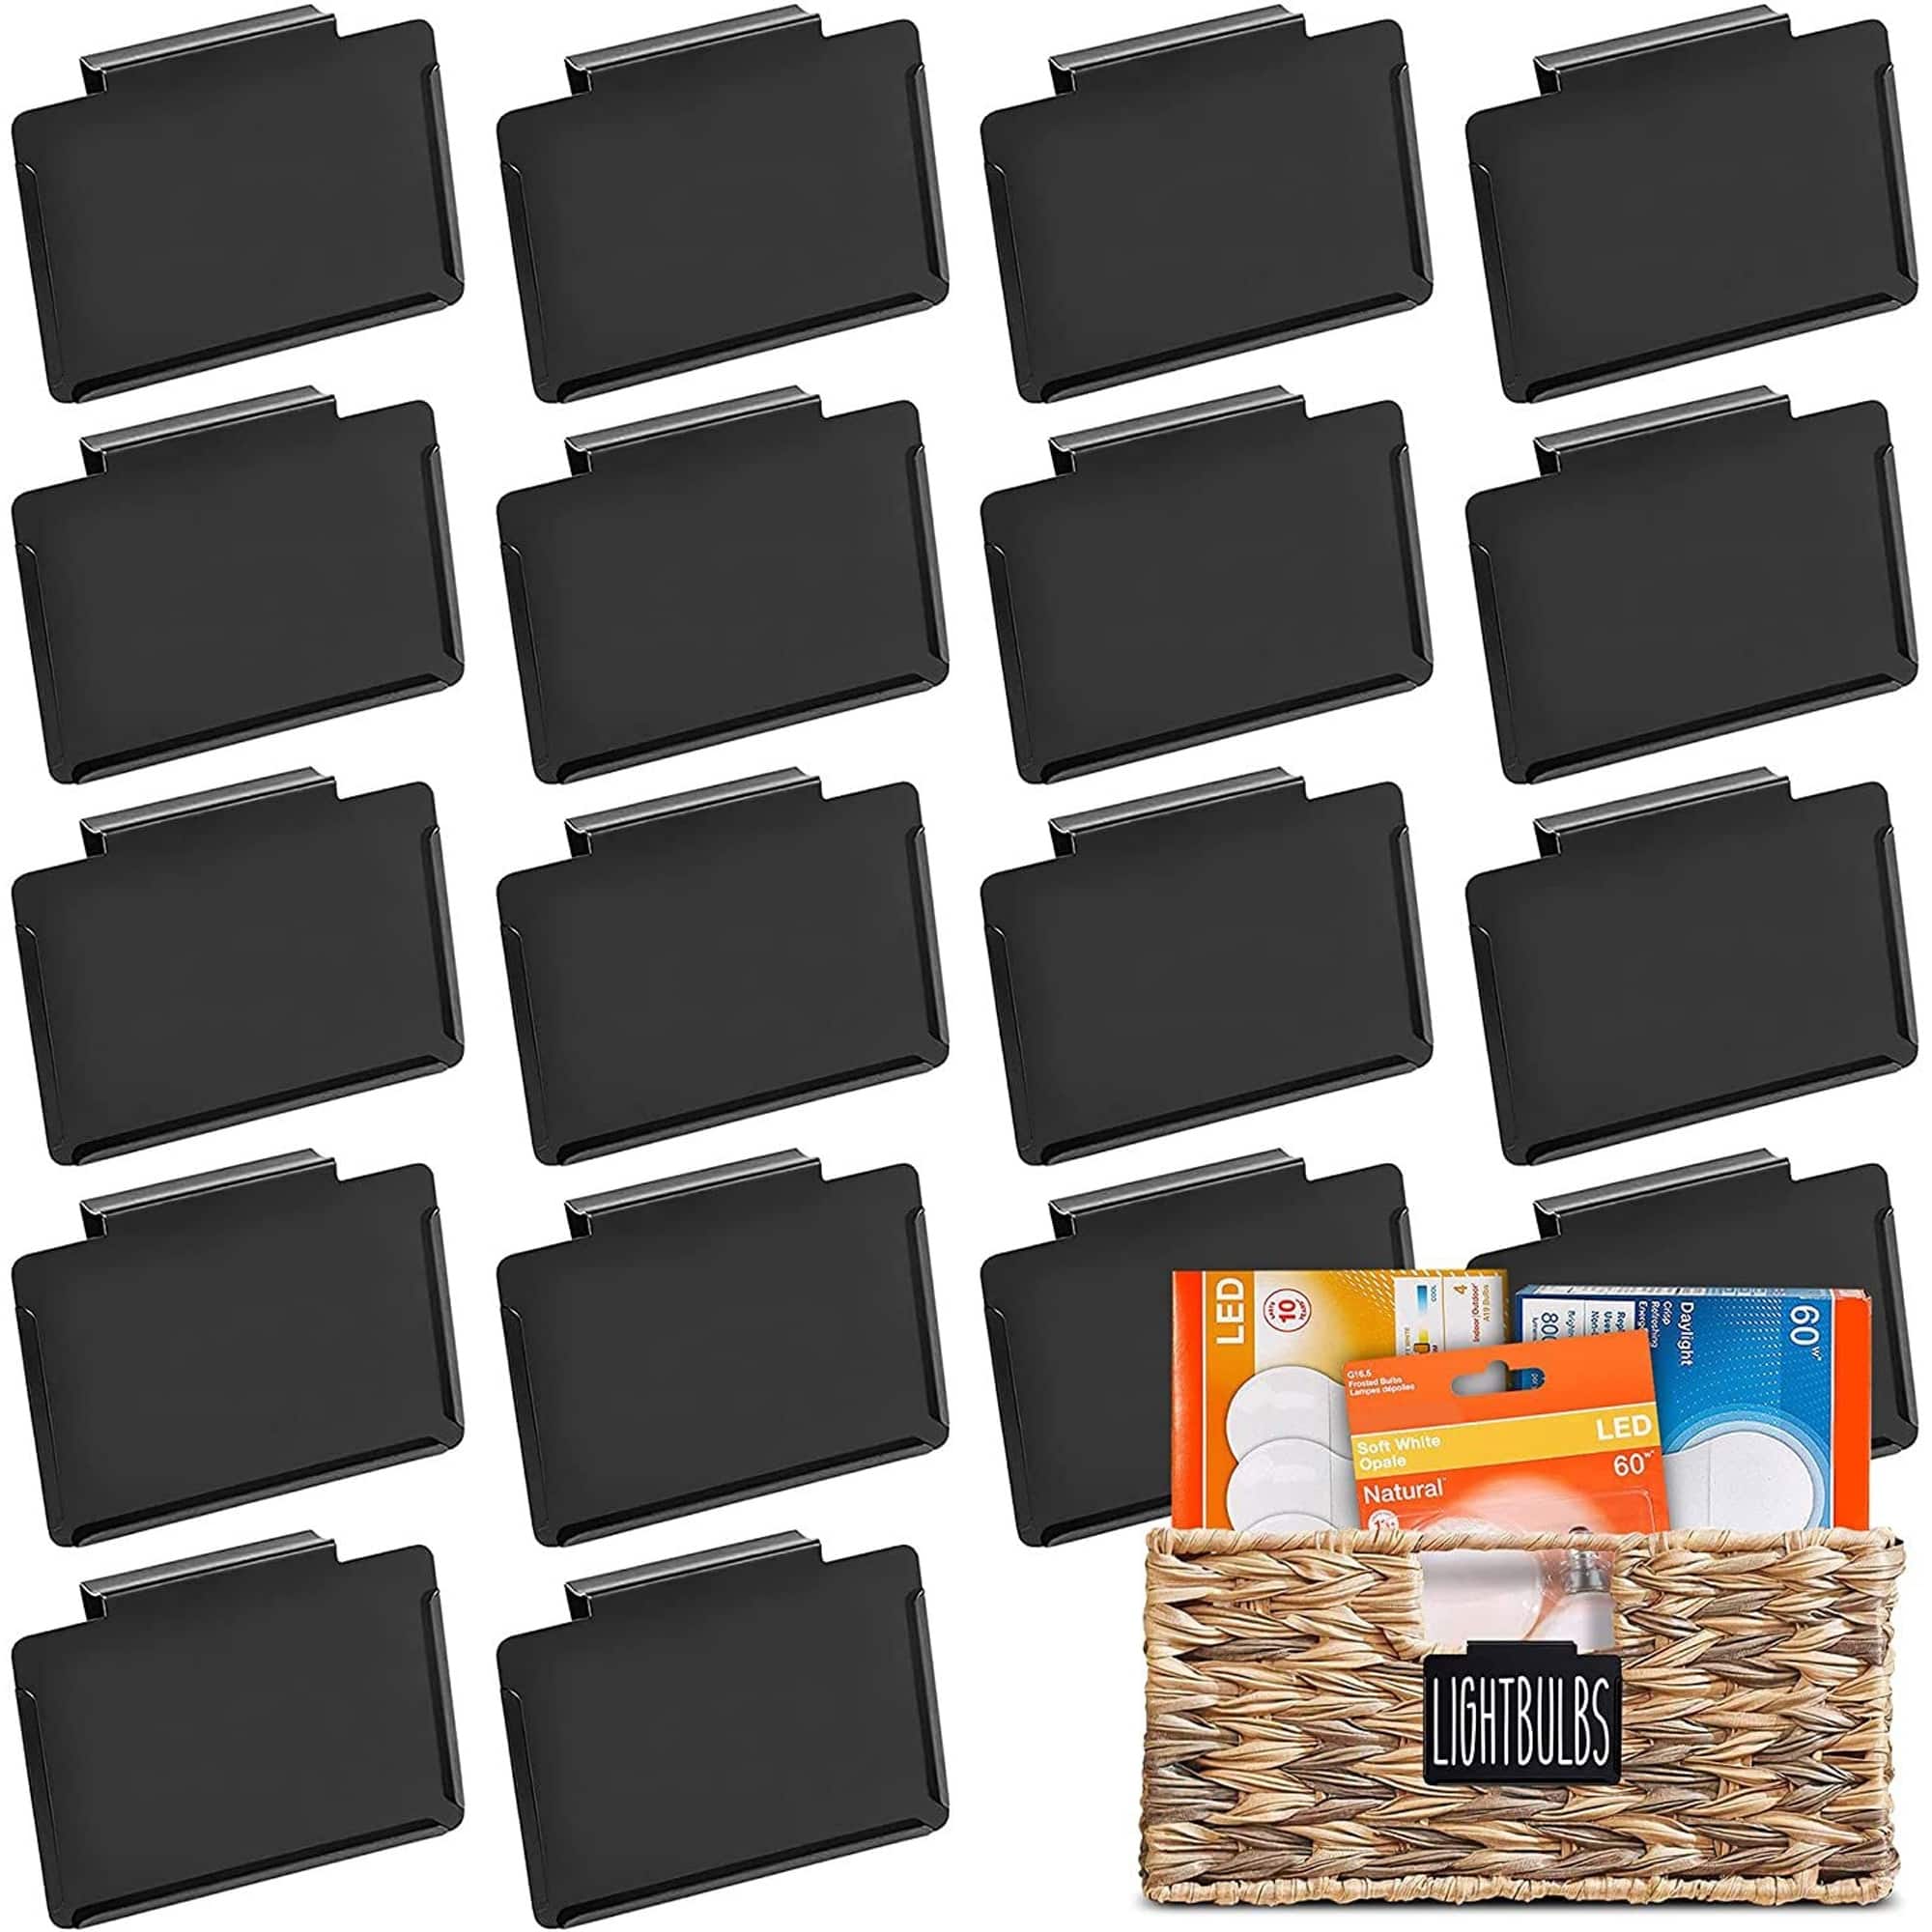 18 Pcs Black Label Holders, Clip On Labels for Storage Bins & Basket ...